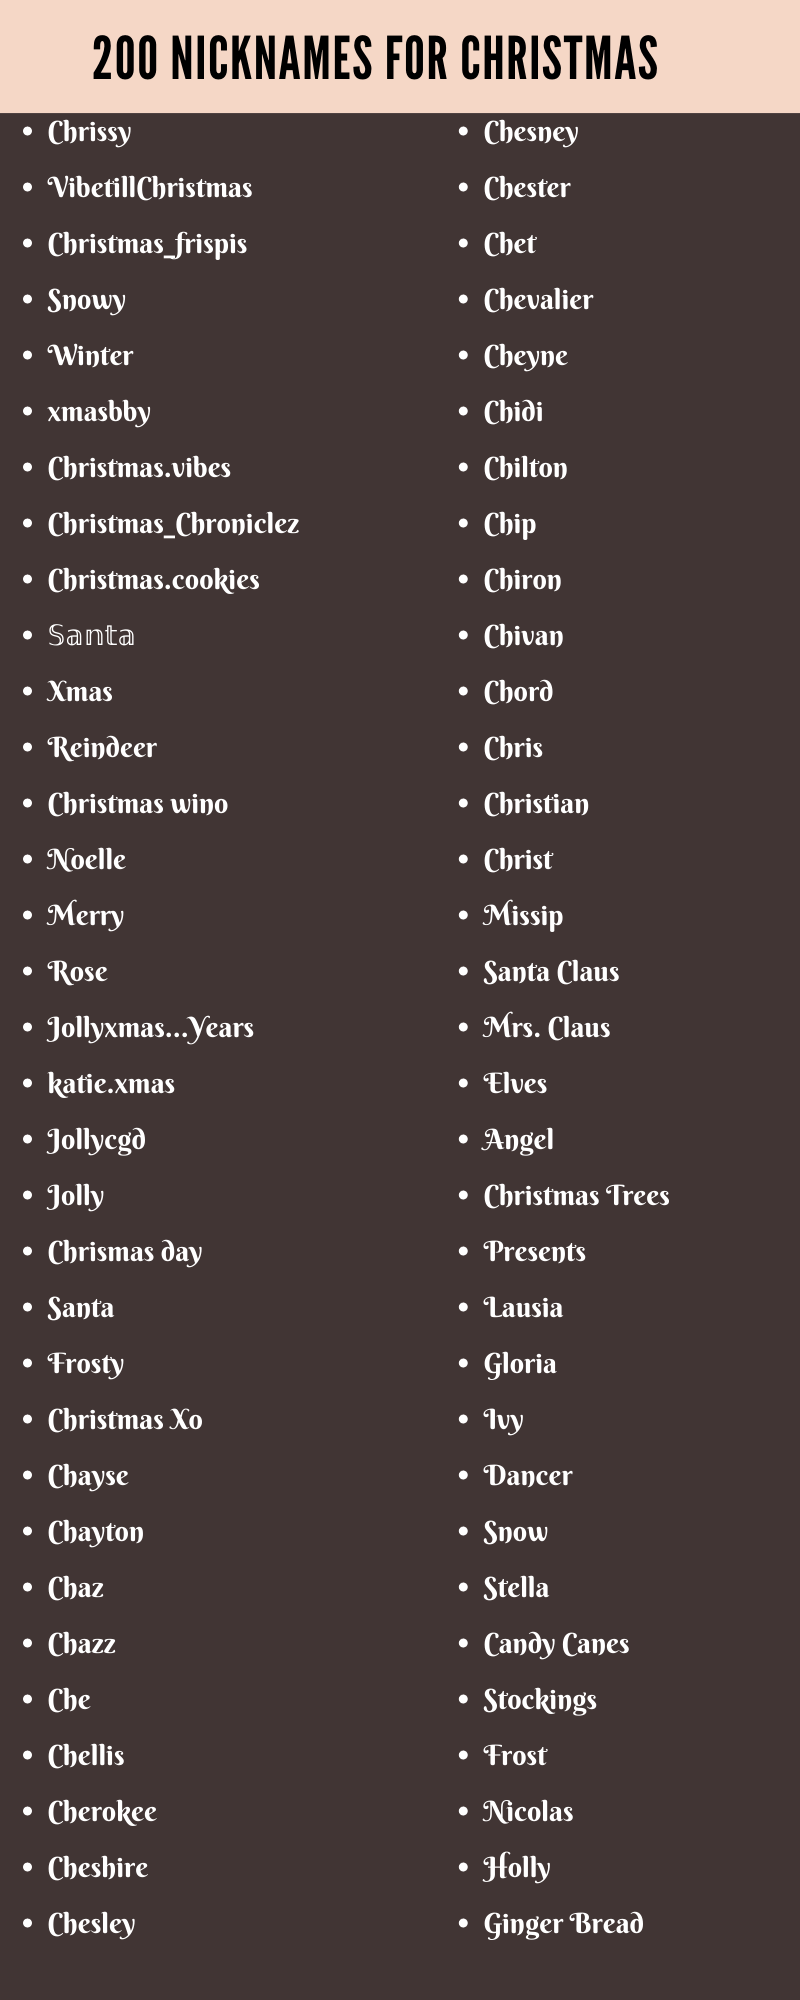 christmas nicknames